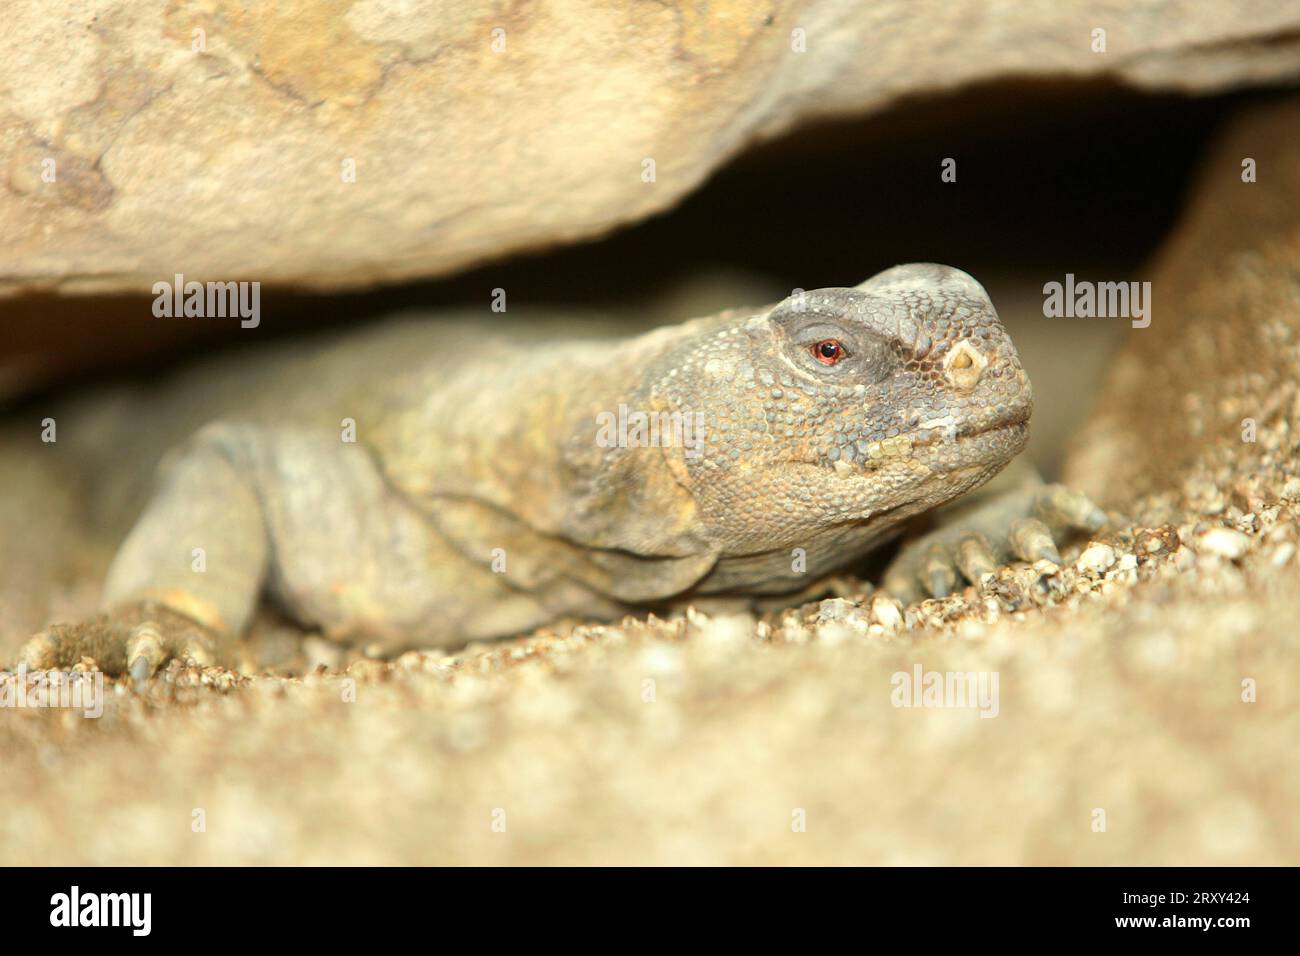 Egyptian spiny-tailed dragon, Egyptian Mastigure or Egyptian dab lizard (Uromastyx aegyptia) Stock Photo